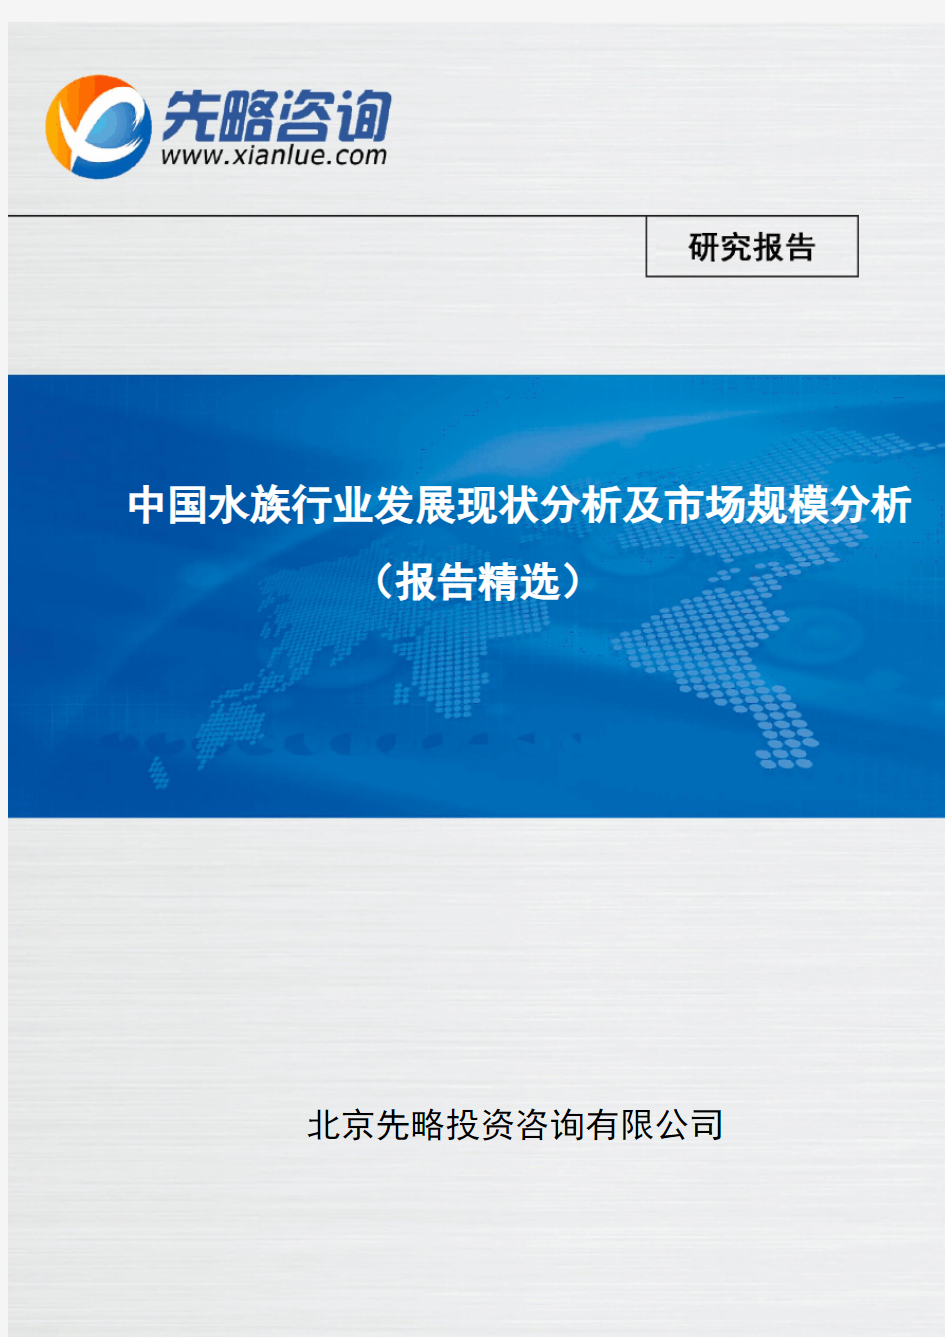 中国水族行业发展现状分析及市场规模分析(报告精选)